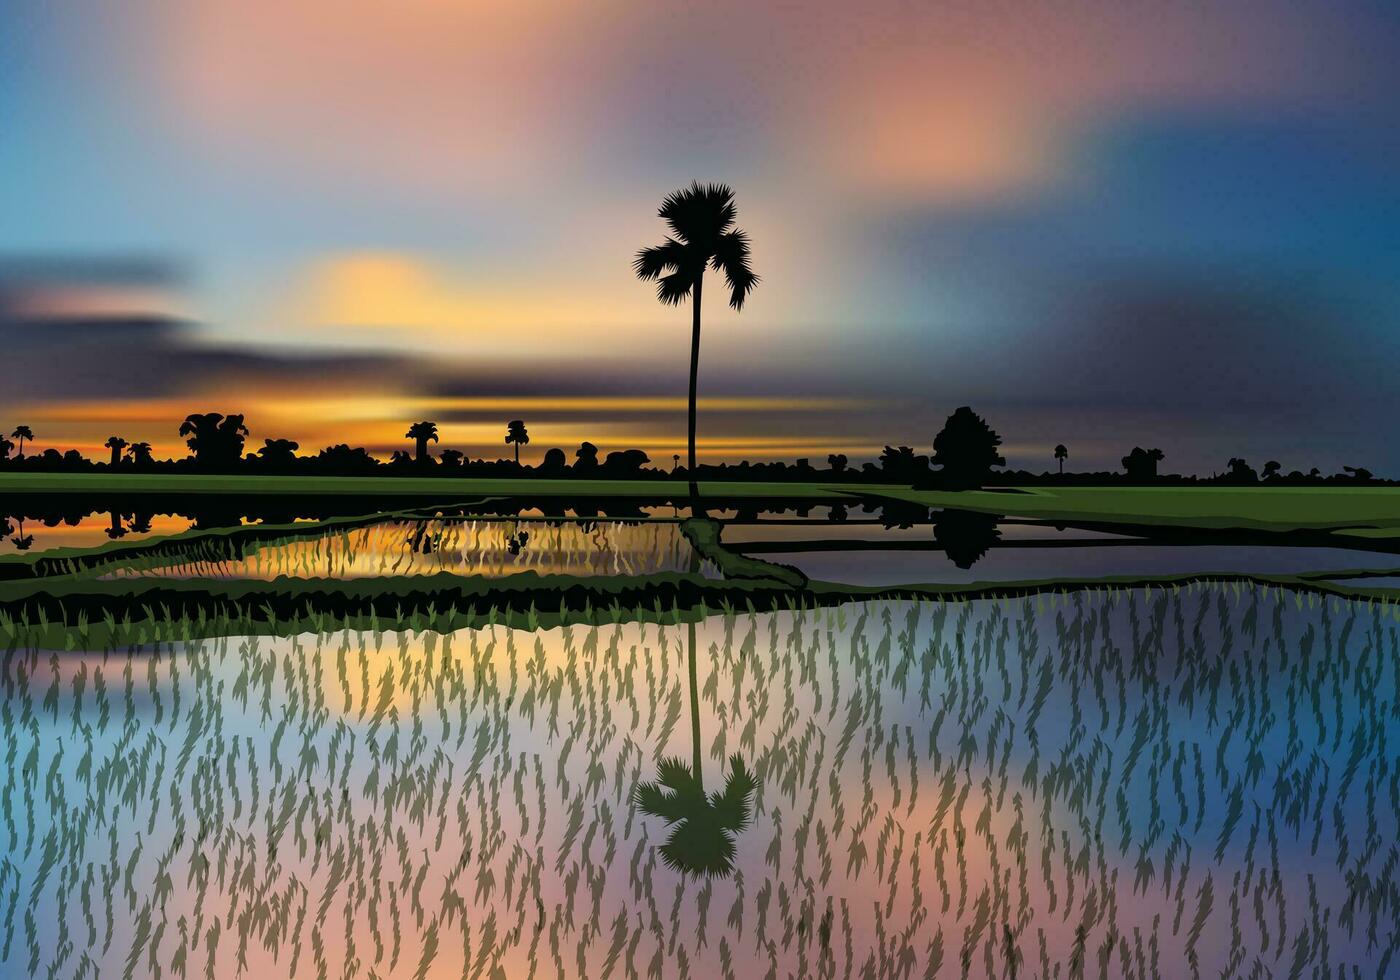 rijst- zaad zonsondergang landschap vector illustratie voor ieder ontwerp doeleinden